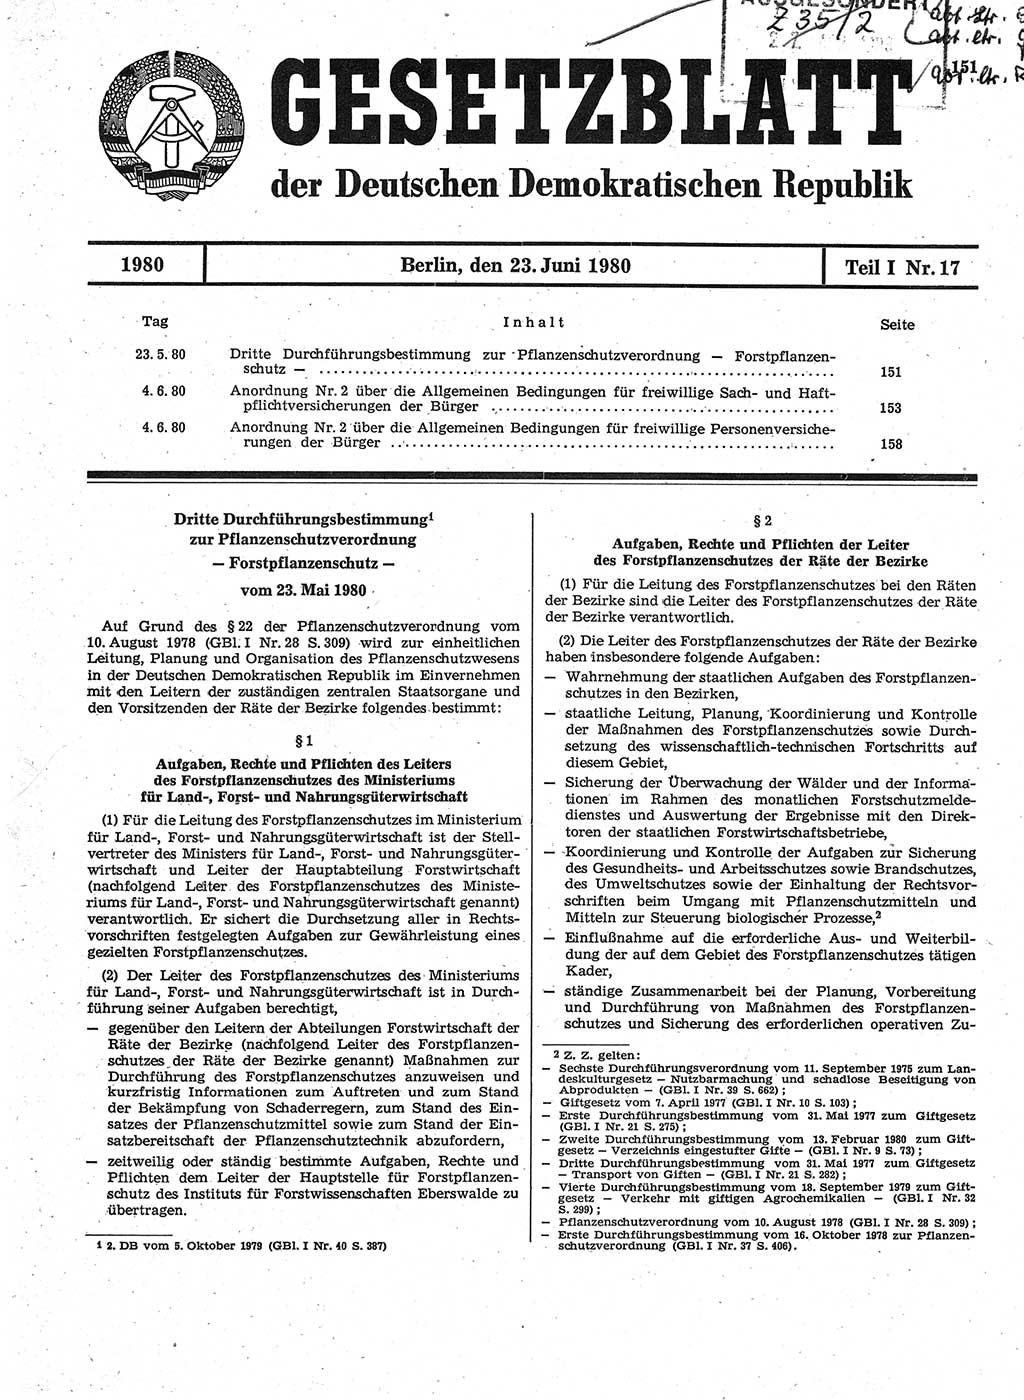 Gesetzblatt (GBl.) der Deutschen Demokratischen Republik (DDR) Teil Ⅰ 1980, Seite 151 (GBl. DDR Ⅰ 1980, S. 151)